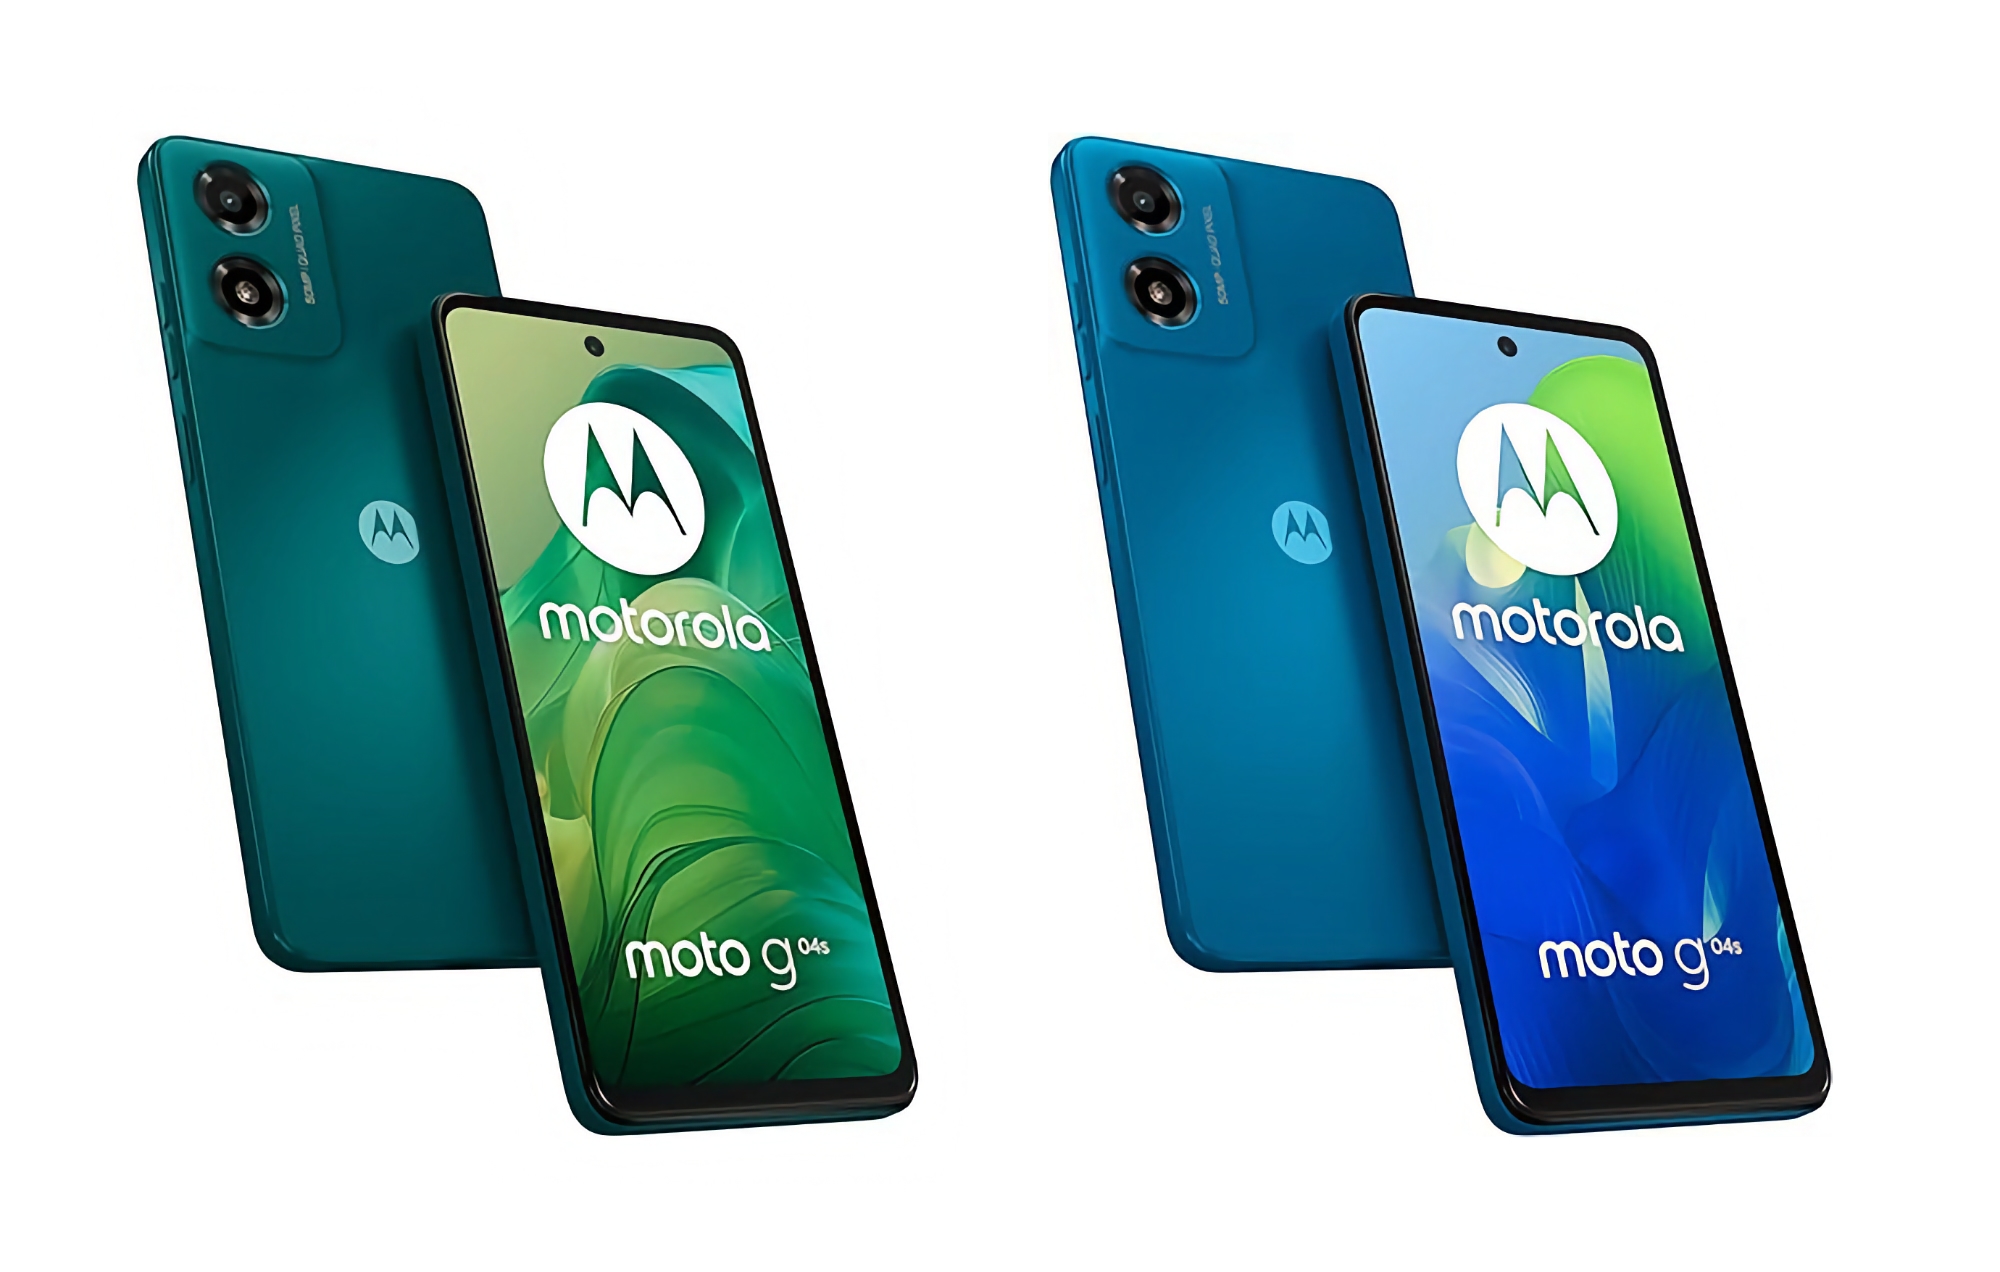 Motorola ha presentato il Moto G04s con display IPS a 90Hz, chip Unisoc T606, batteria da 5000mAh e un prezzo di 100 euro.